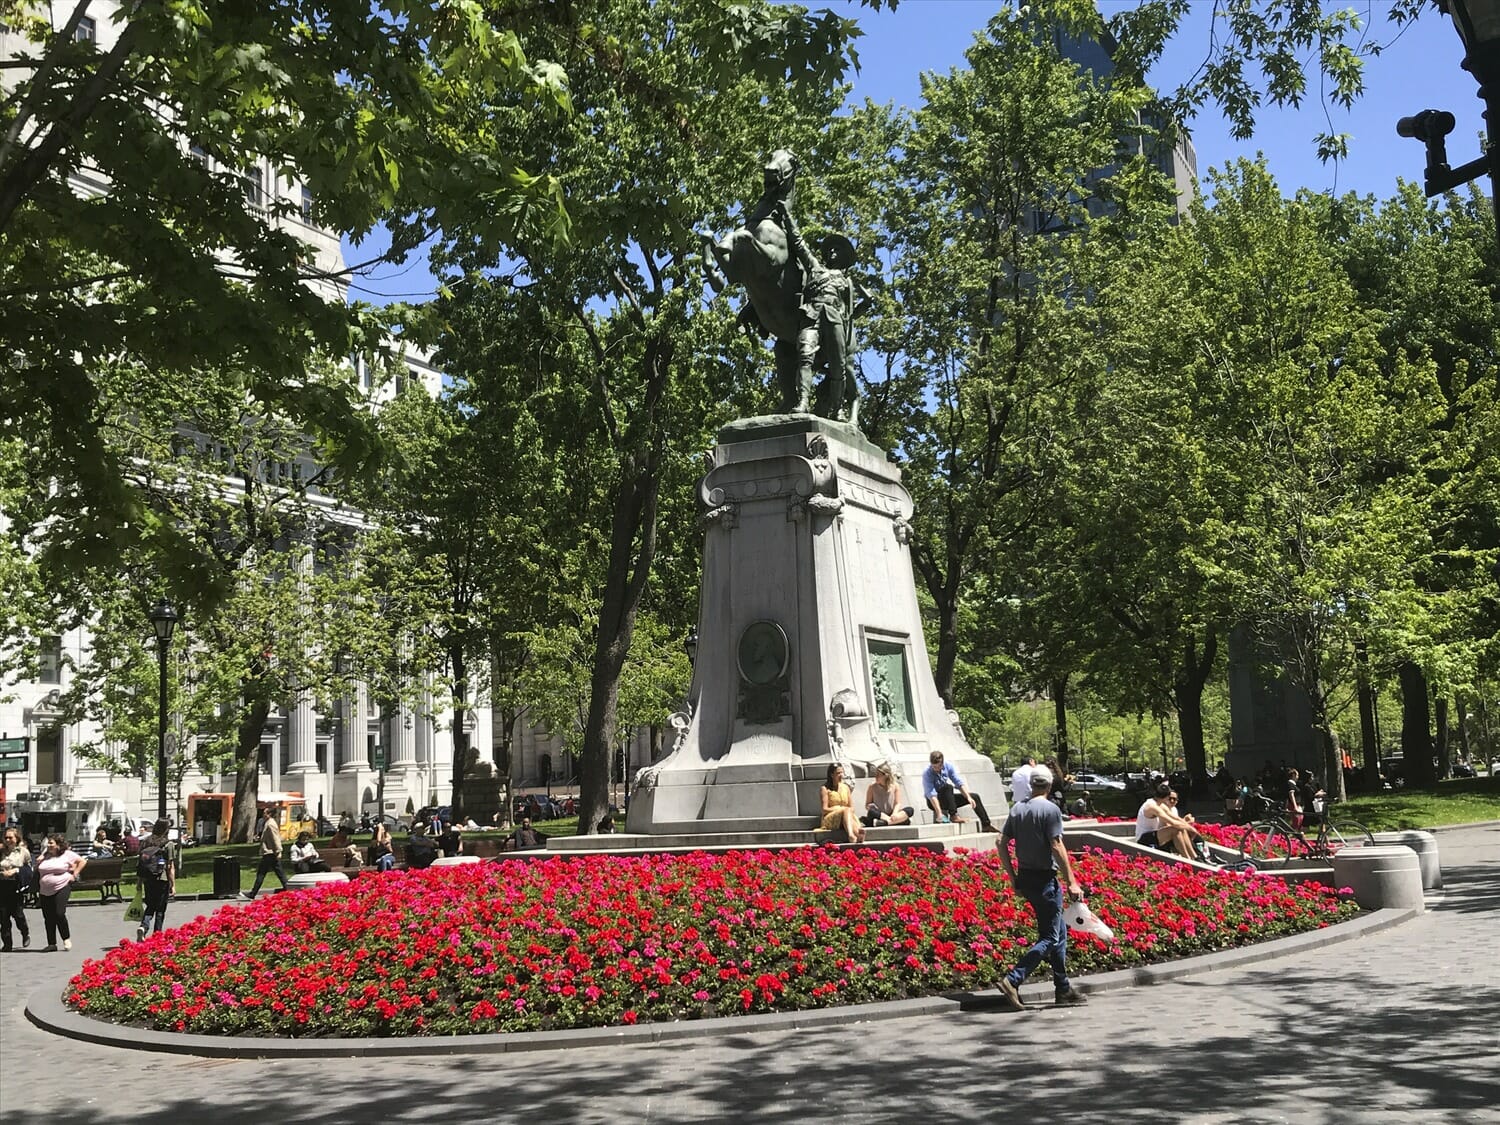 Une statue d'homme dans un parc entouré de fleurs rouges.